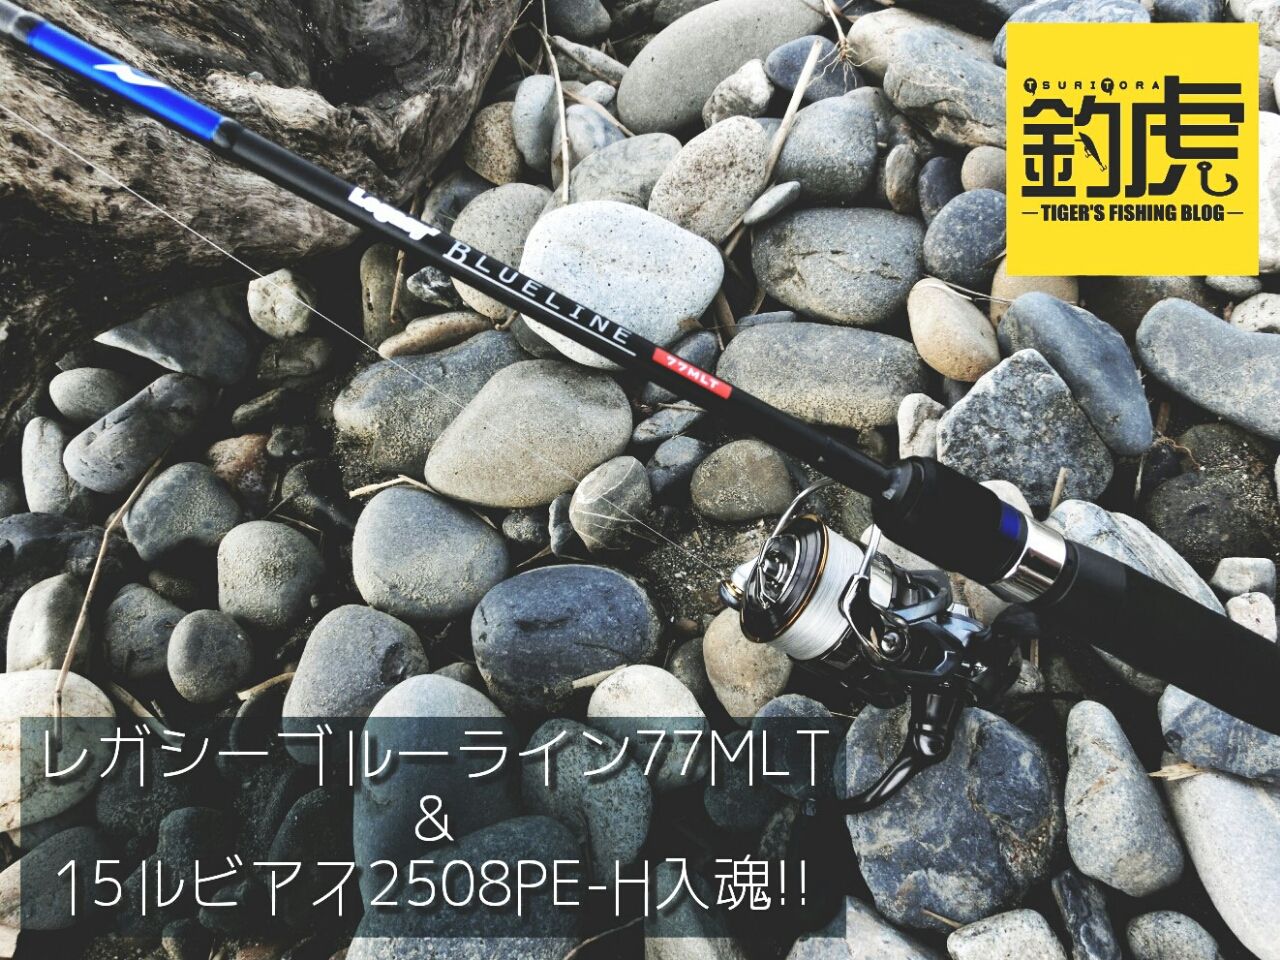 レガシーブルーライン77MLT&15ルビアス2508PE-H入魂!! : 釣虎 ―TIGER'S FISHING BLOG―